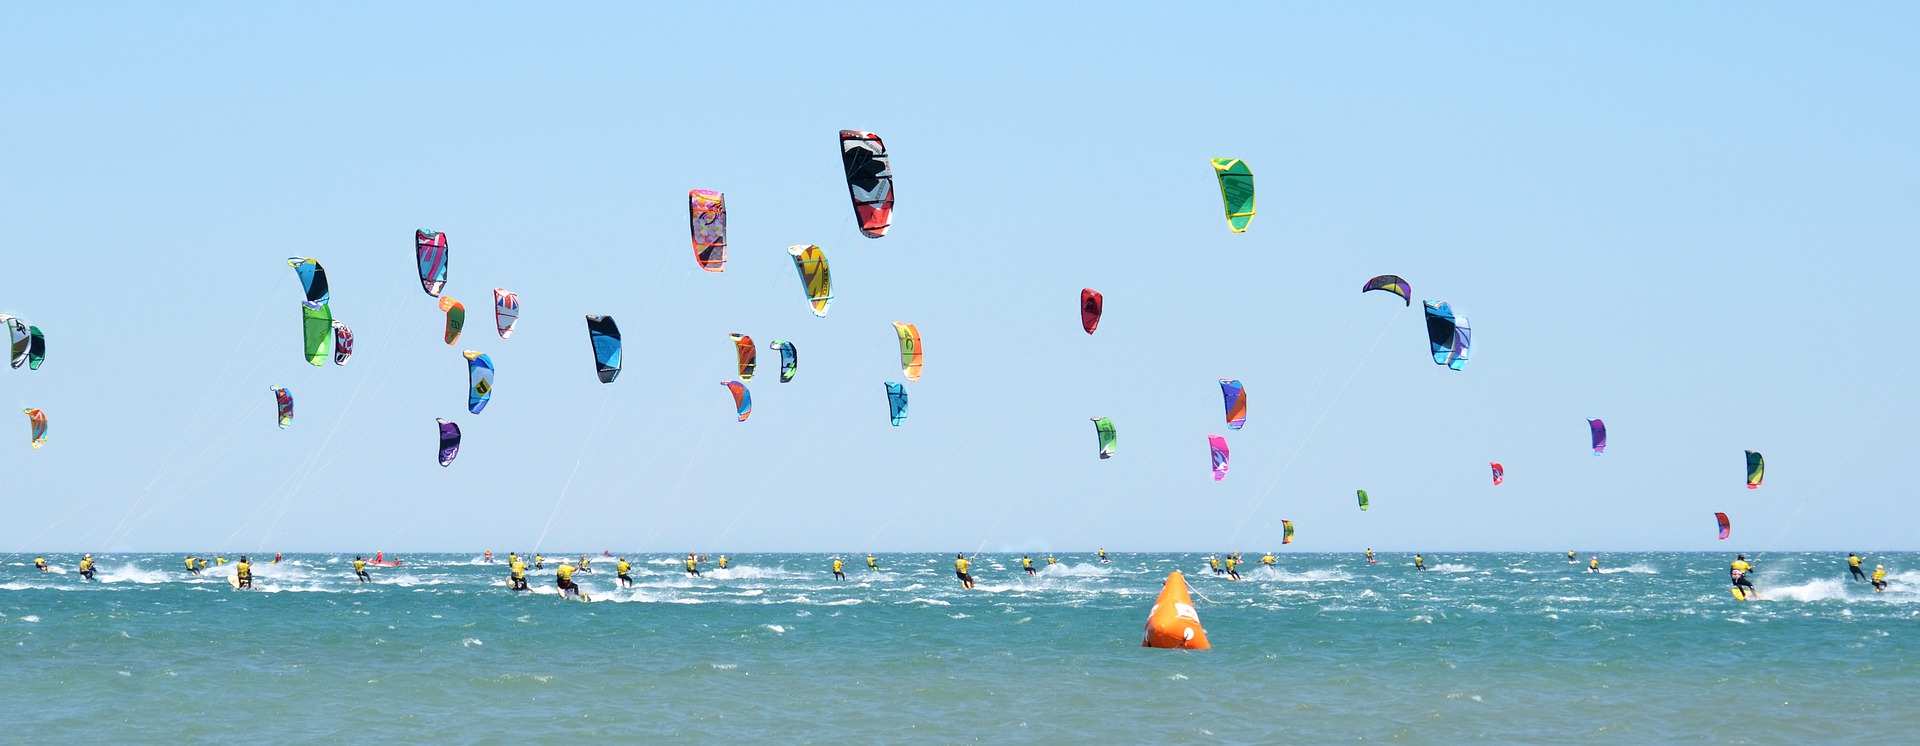 Kitesurf, deporte del cual reutilizan los kites para hacer chaquetas